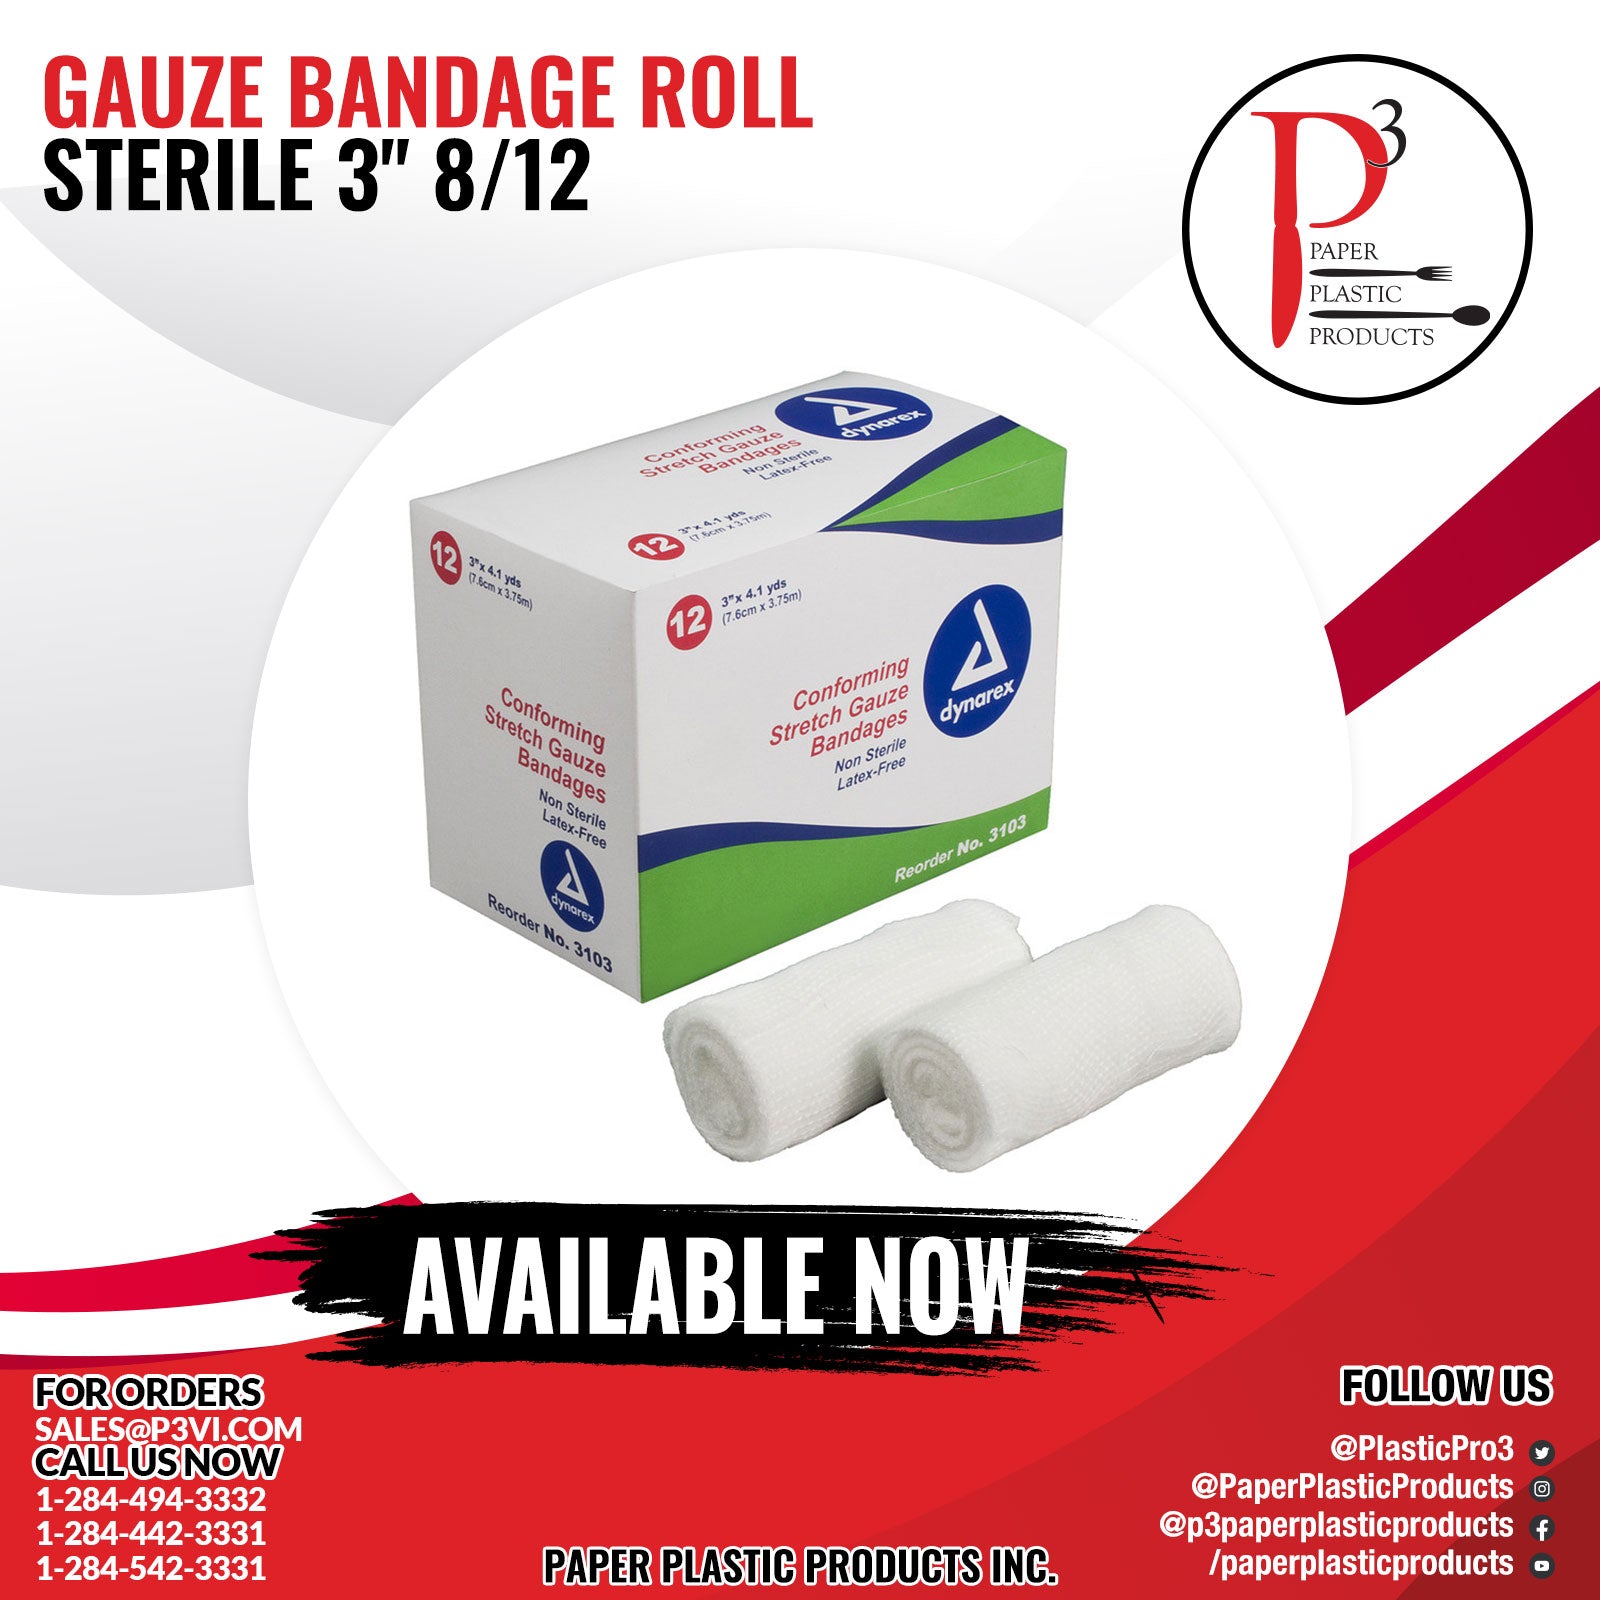 Gauze Bandage Roll Sterile 3" 8/12